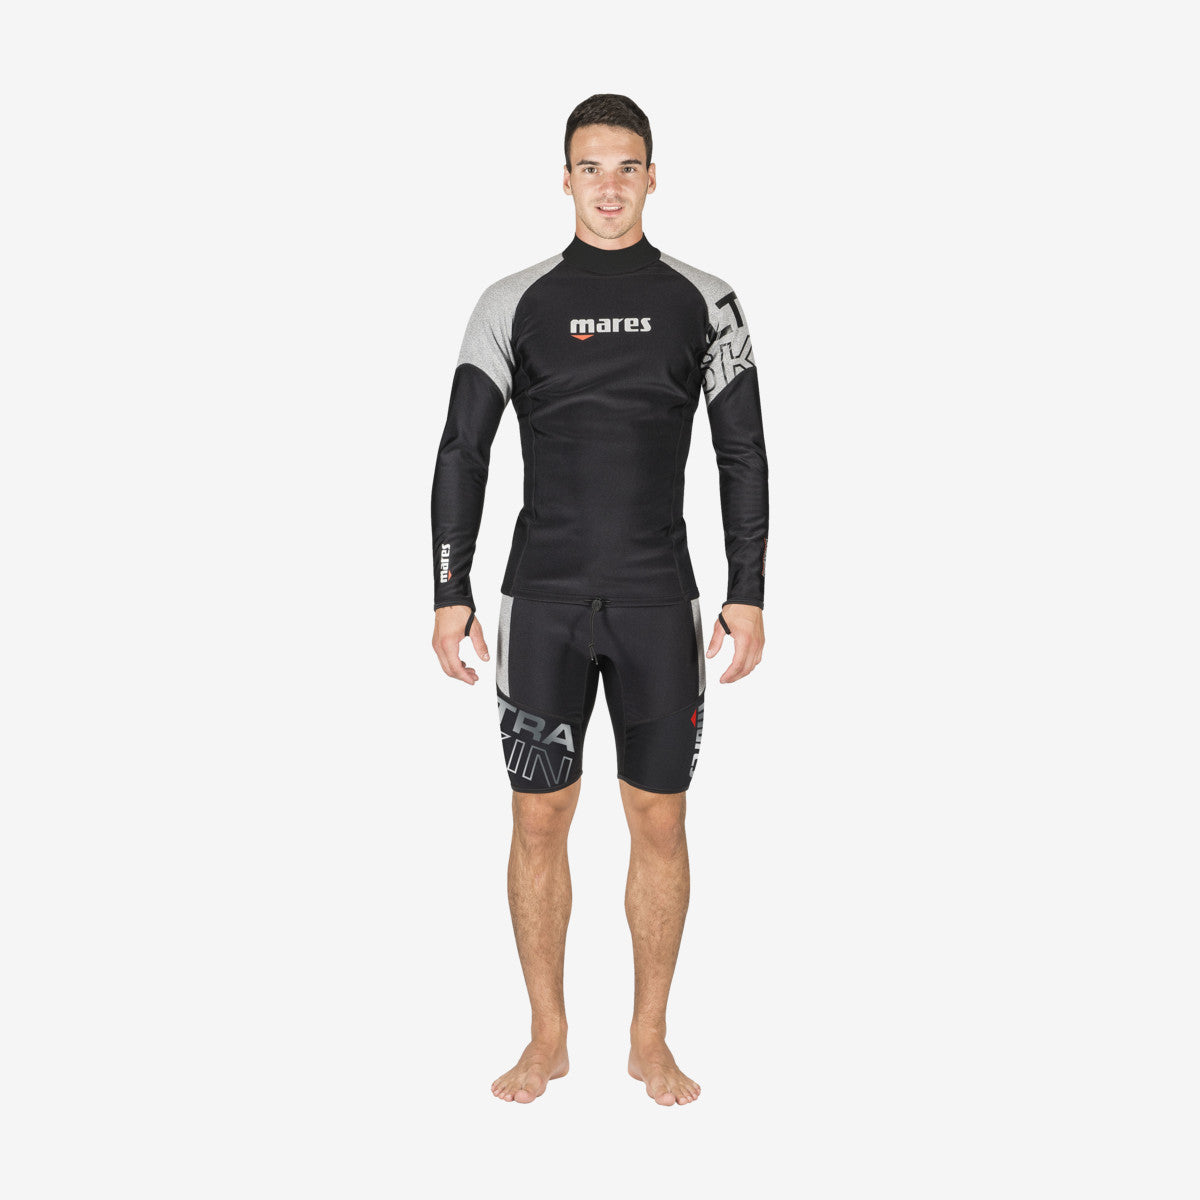 MARES Ultra Sking - Long Sleeve חלק עליון לצלילה וספורט ימי עם שרוולים ארוכים